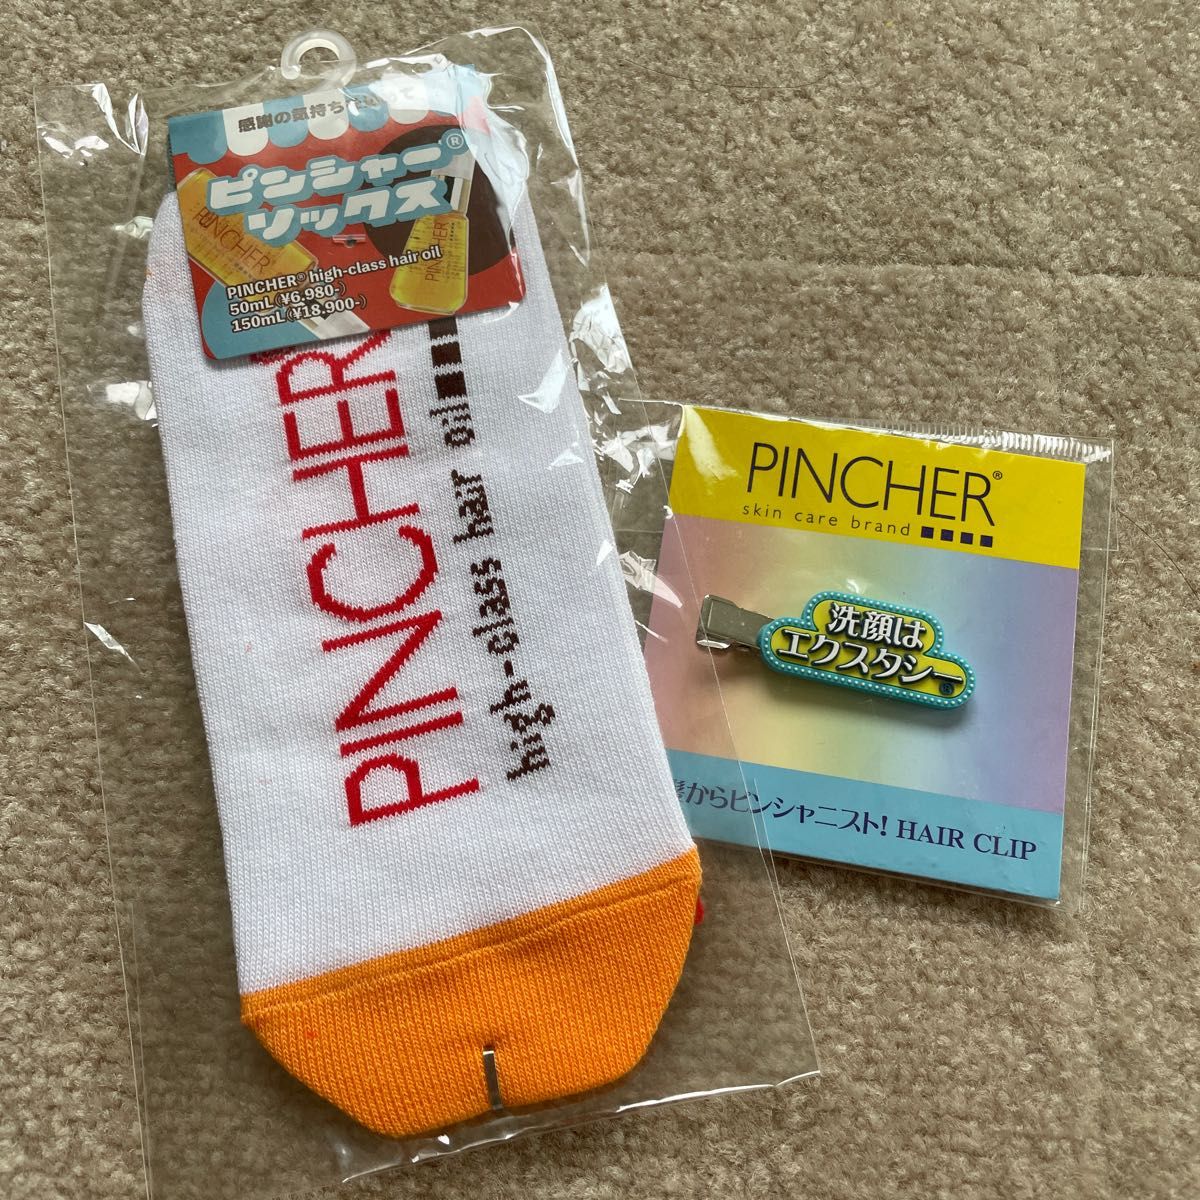 PINCHER 非売品2店